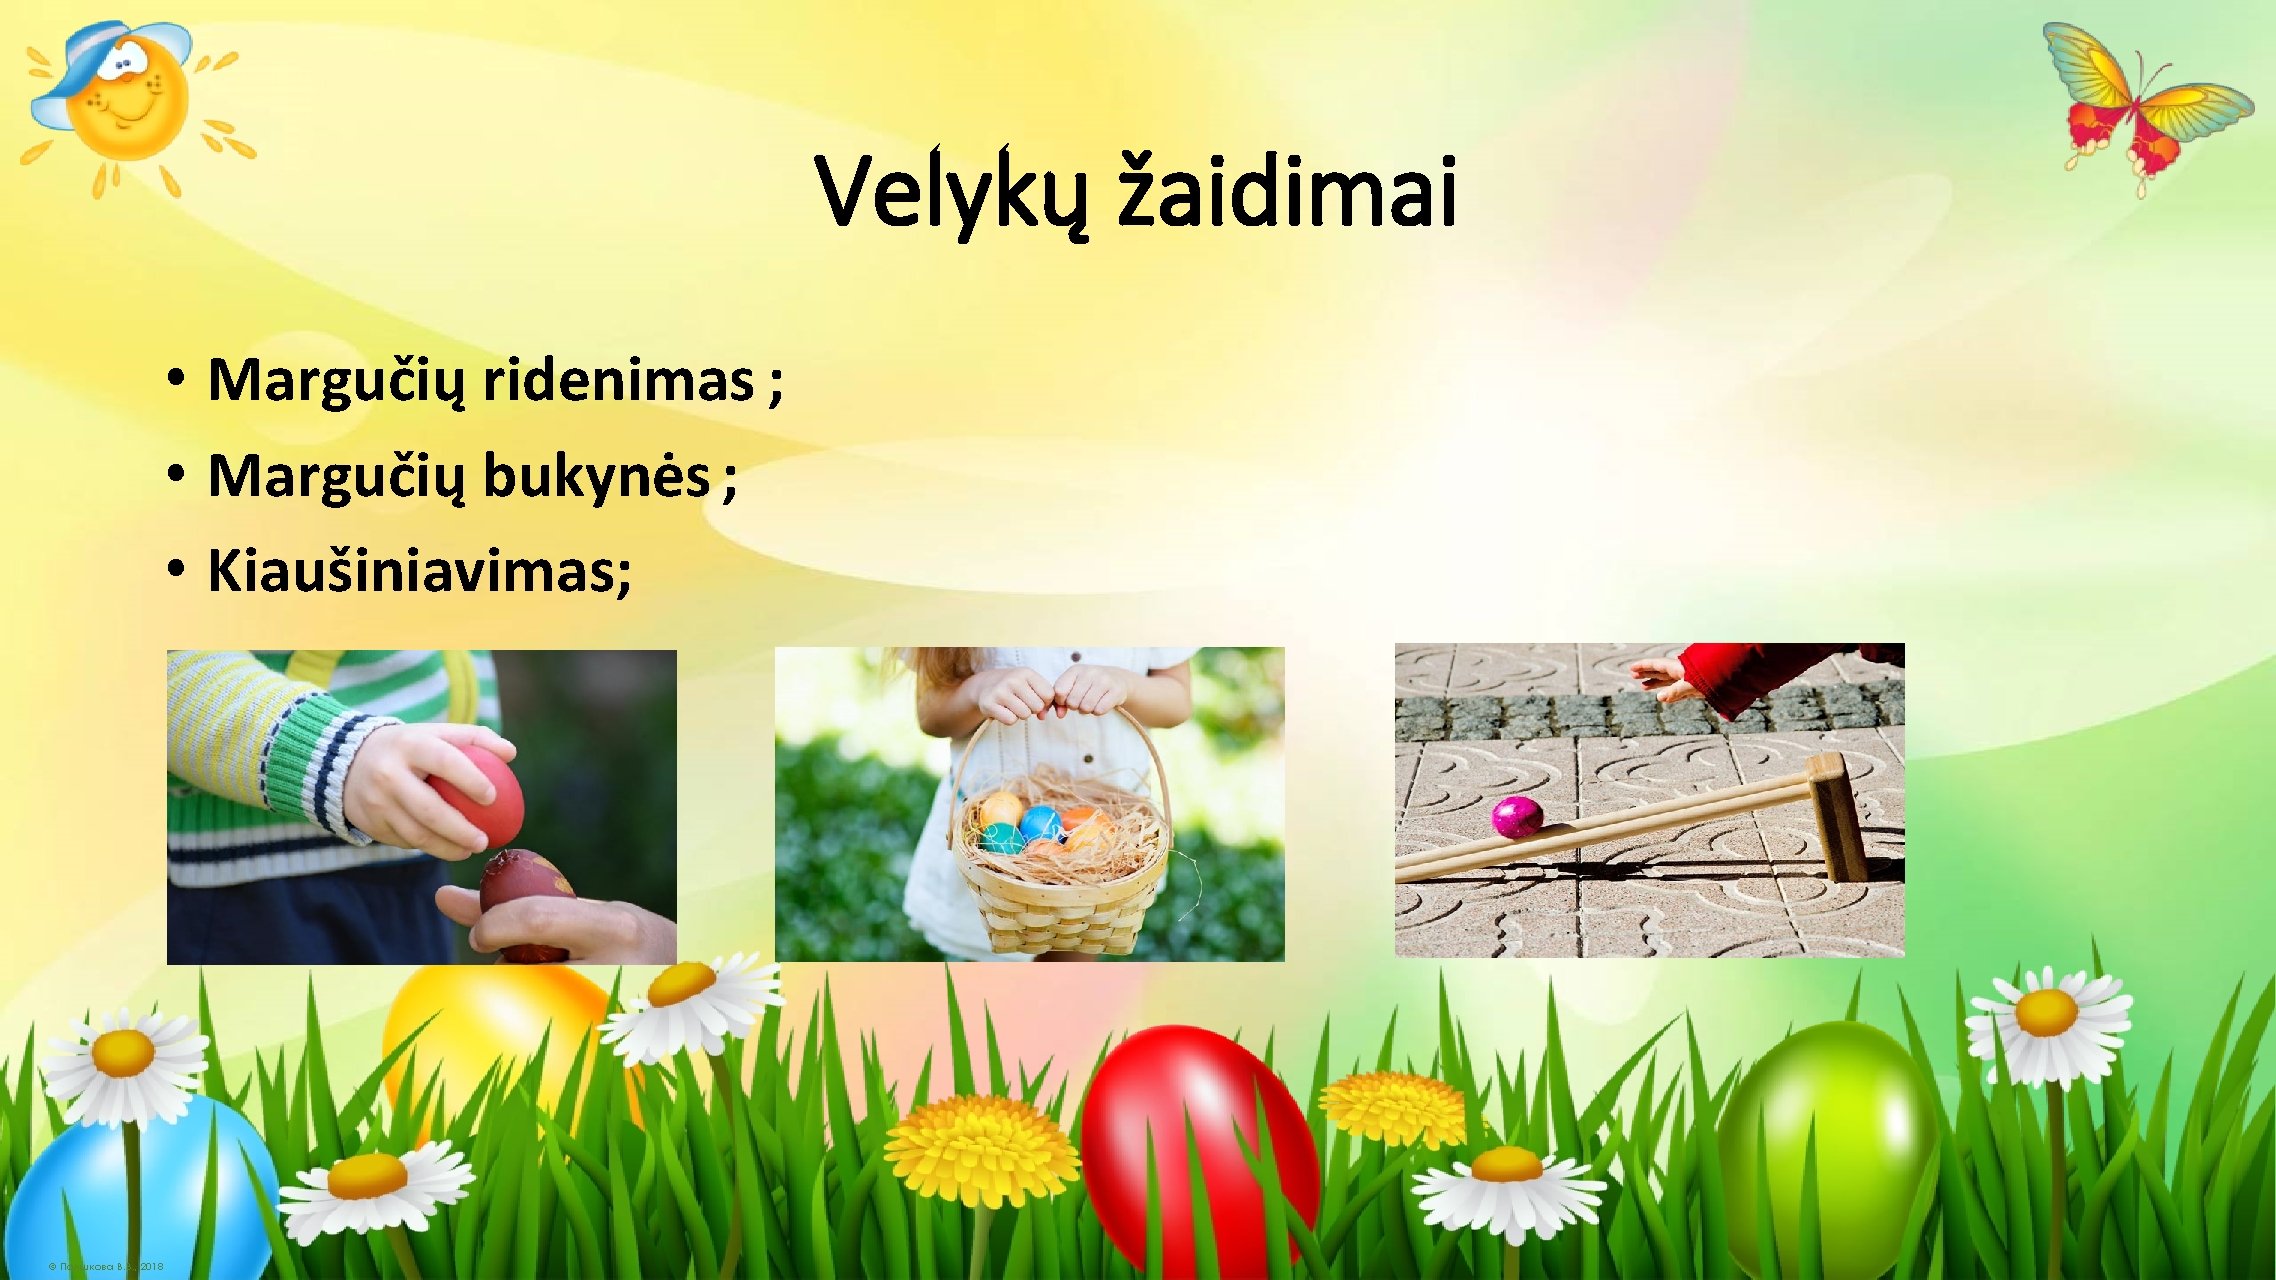 Velykų žaidimai • Margučių ridenimas ; • Margučių bukynės ; • Kiaušiniavimas; © Полшкова